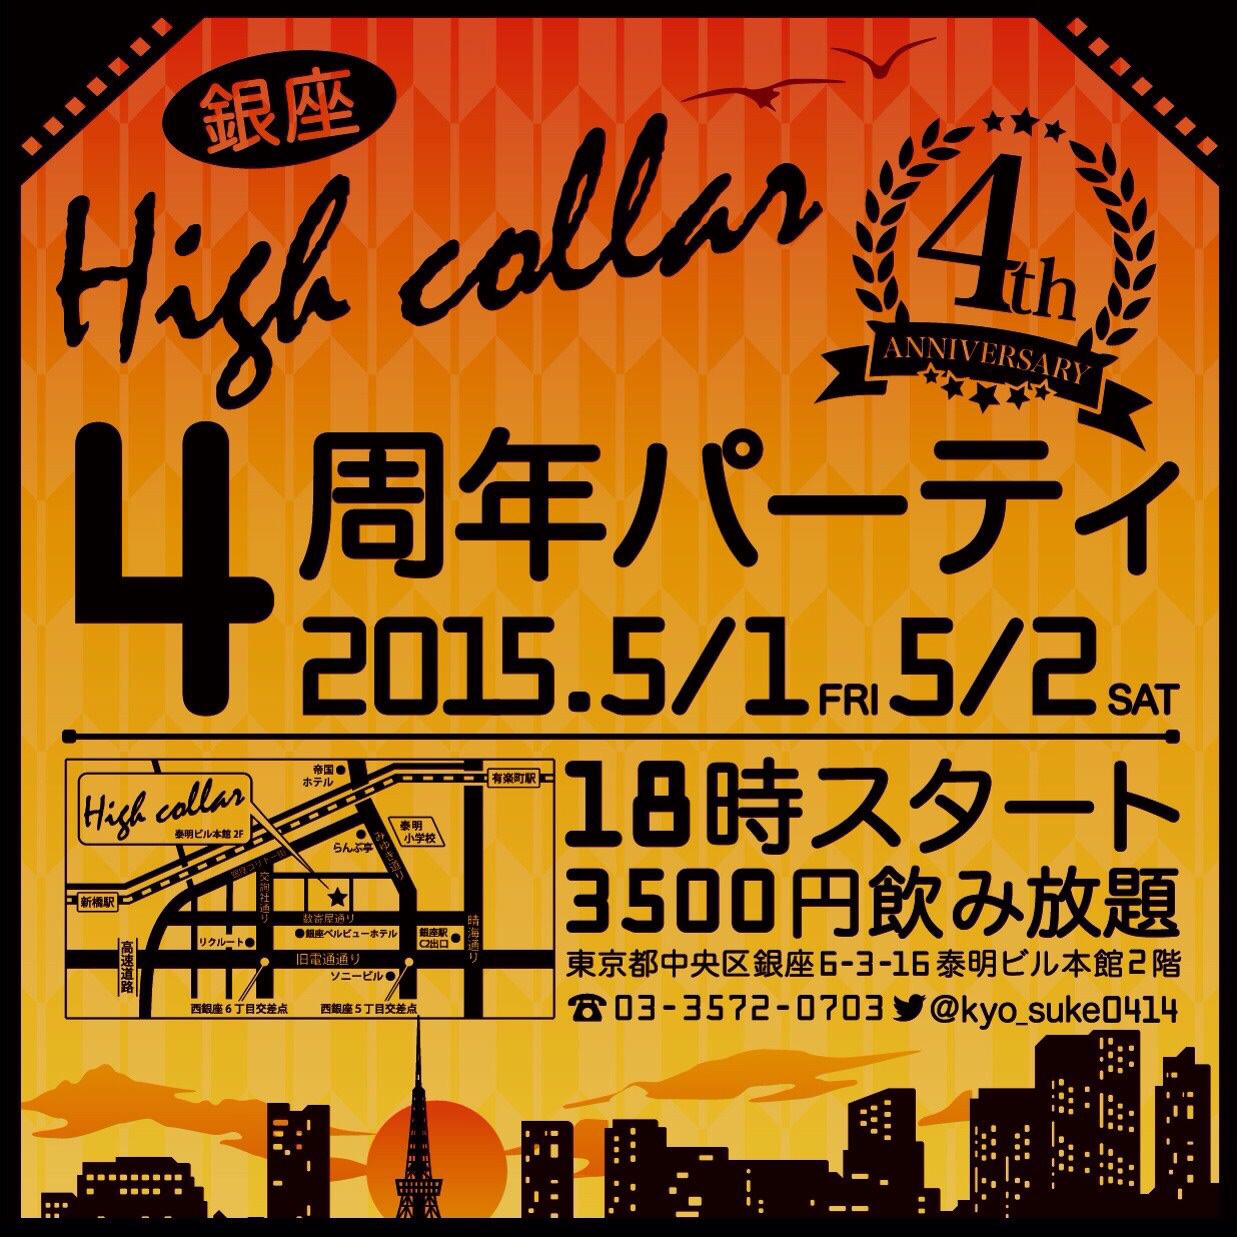 ☆銀座High collar４周年パーティー☆